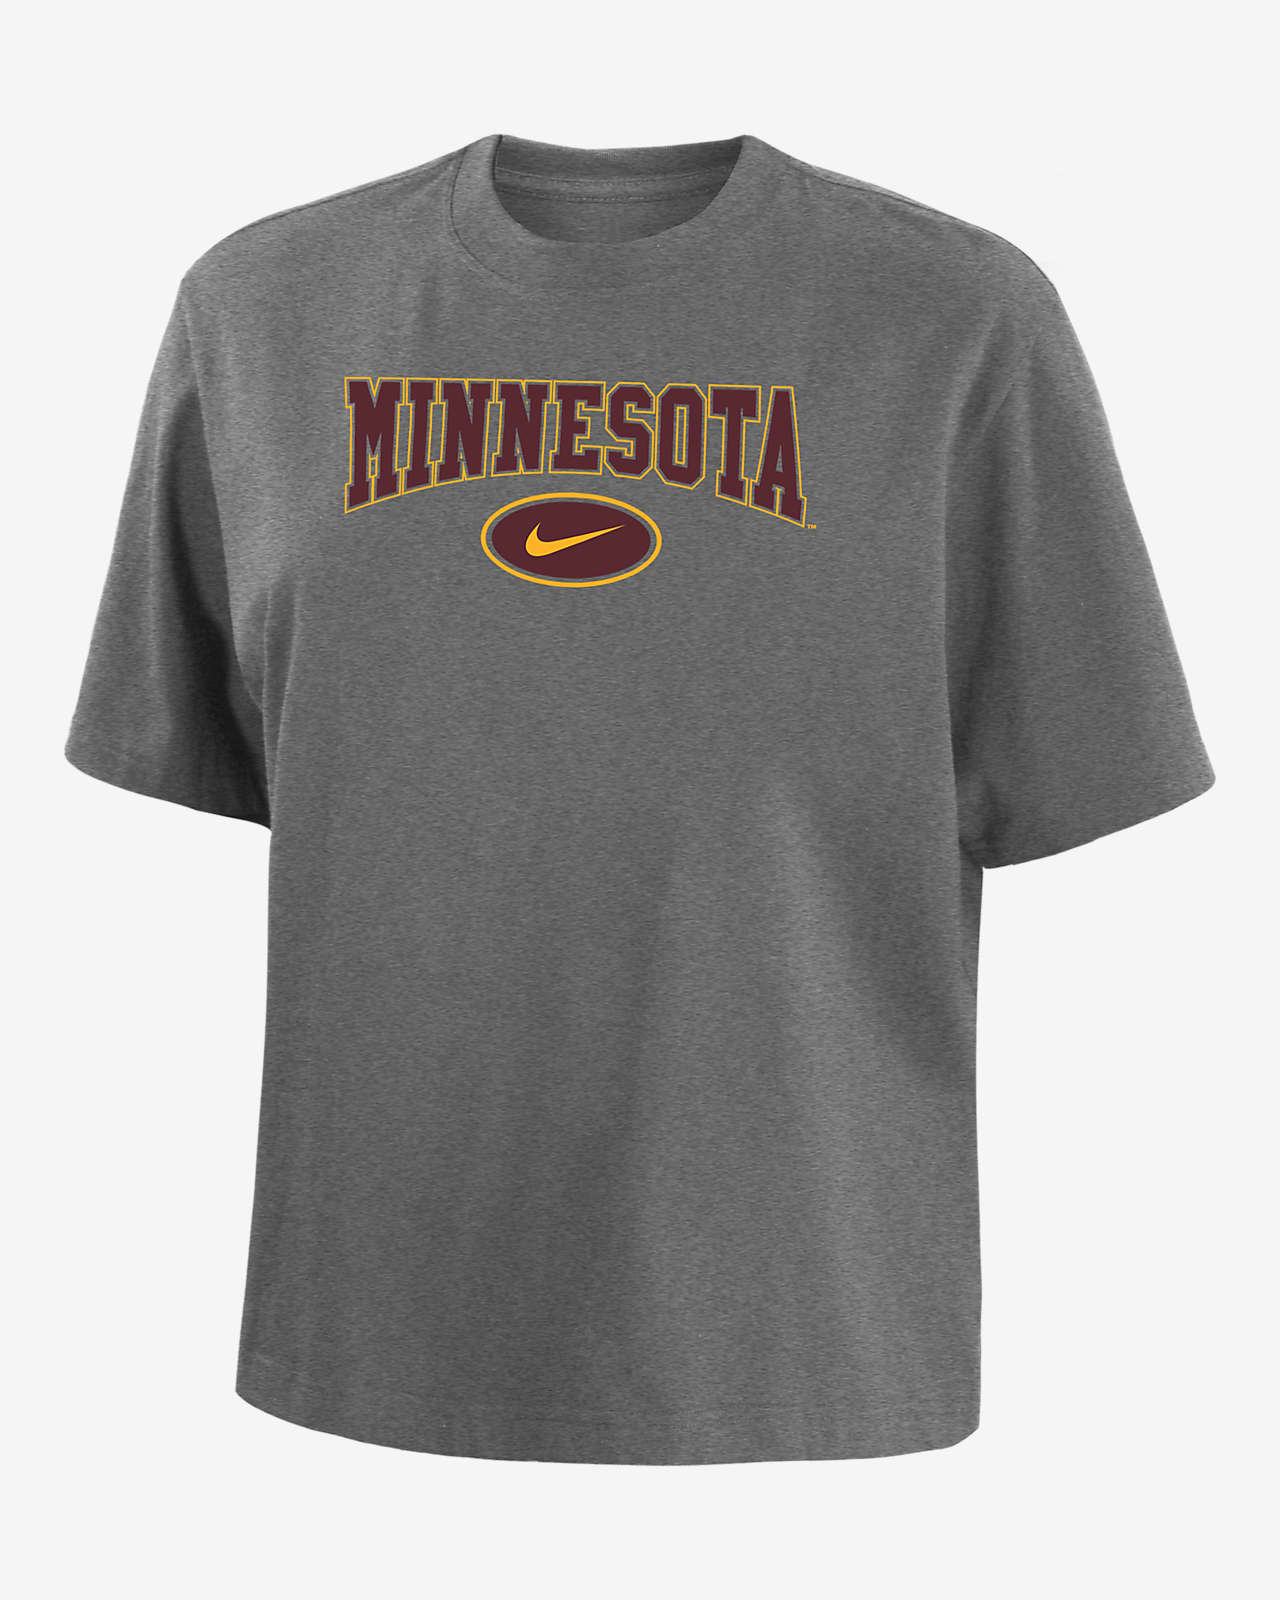 Minnesota Women's Nike College Boxy T-Shirt